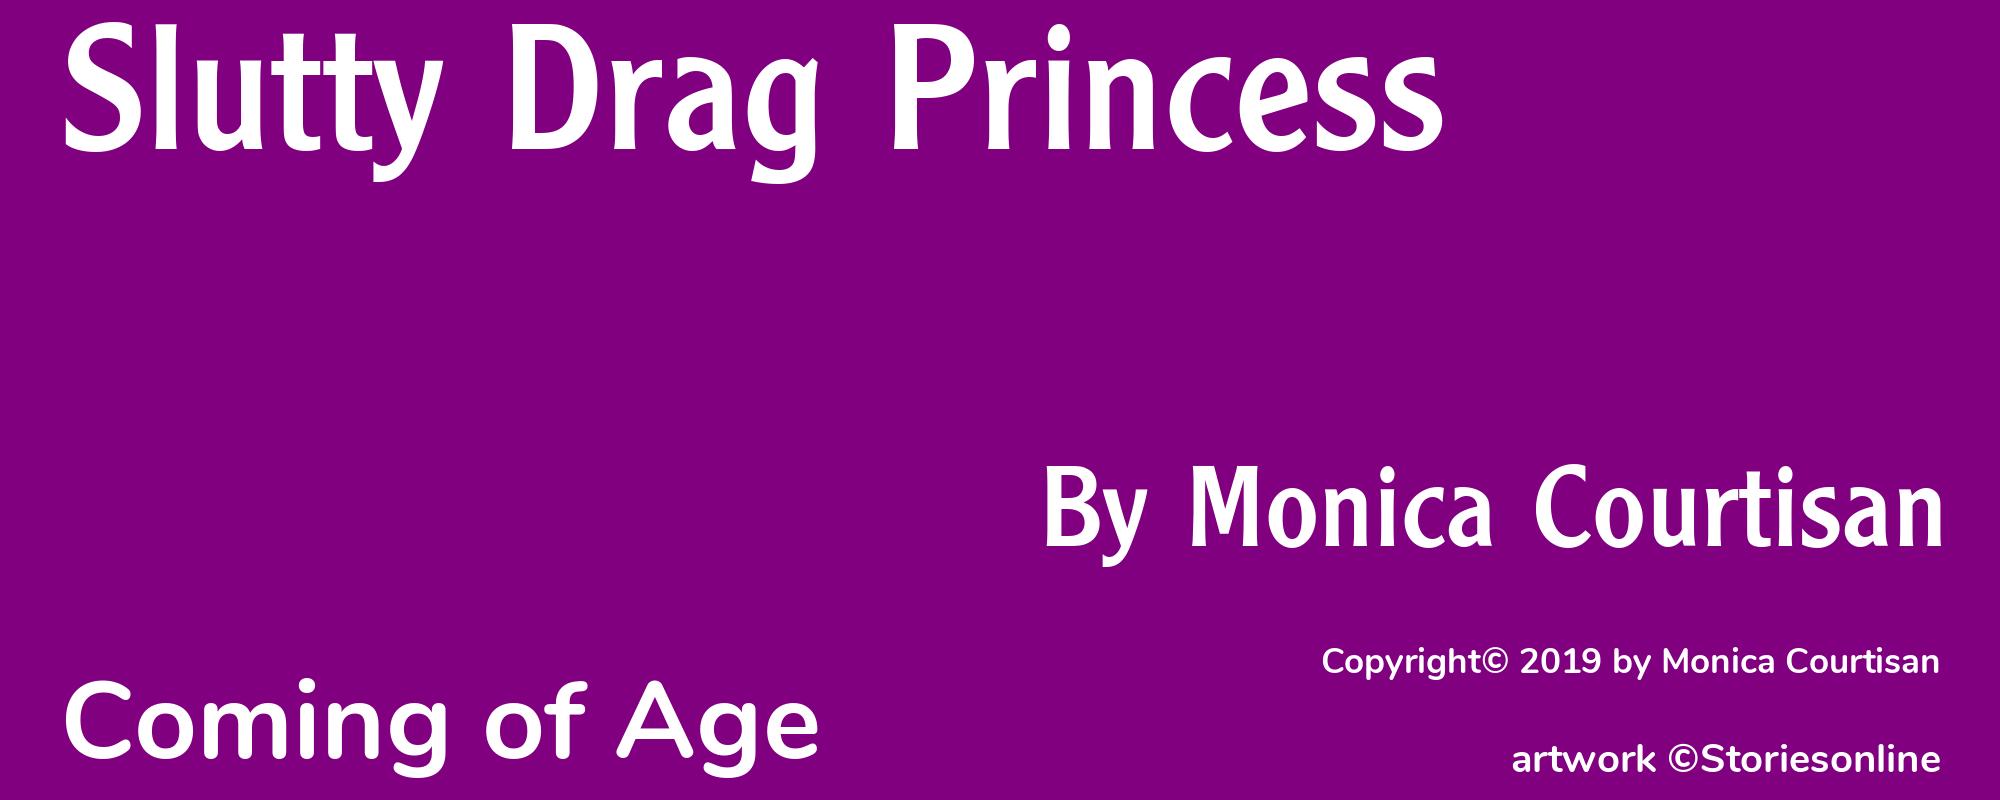 Slutty Drag Princess - Cover